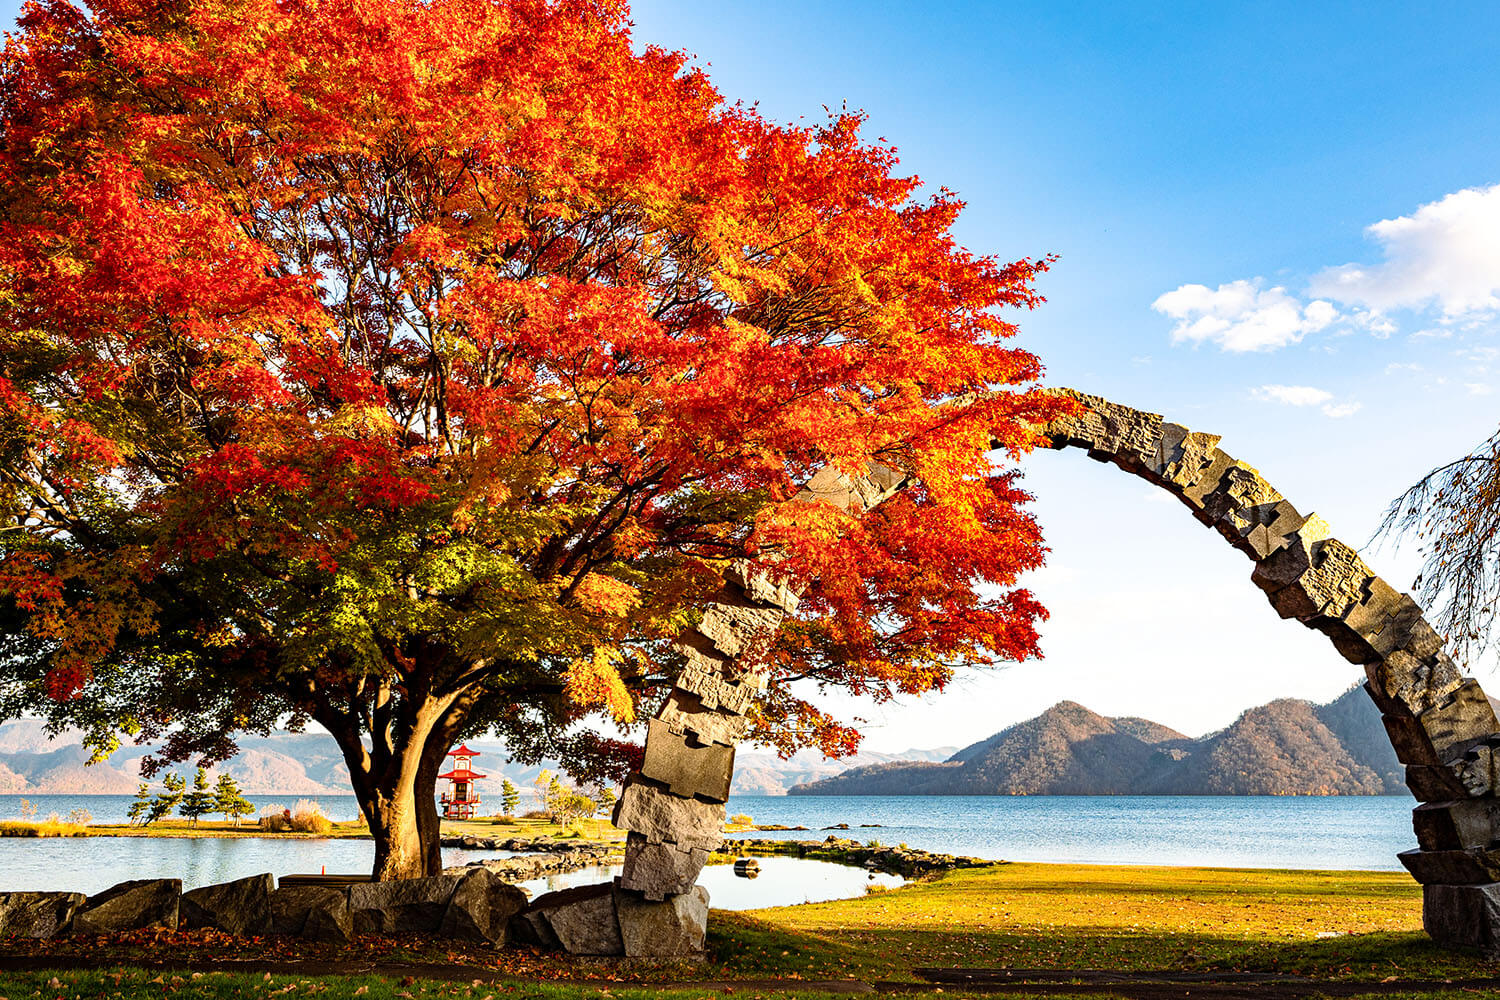 洞爺湖畔には彫刻公園が整備されており、彫刻と紅葉のコラボレーションも楽しめる